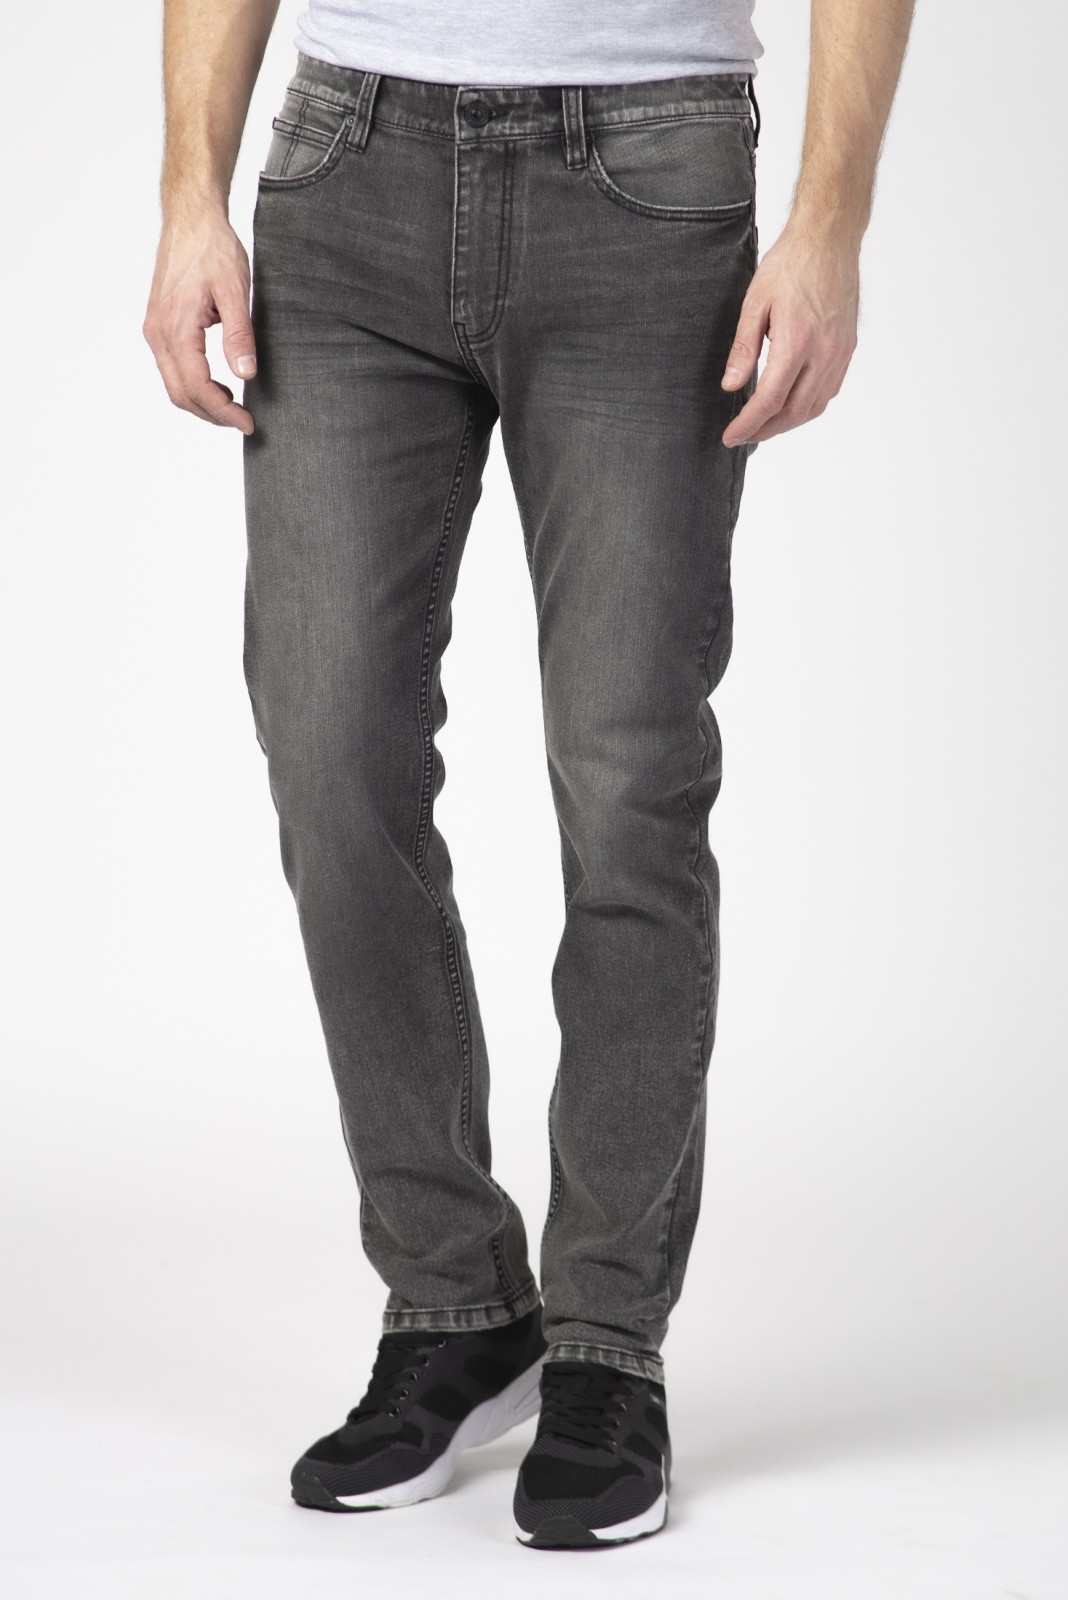 Брюки джинсовые zolla 210217185041, цвет светло-серый, размер 30